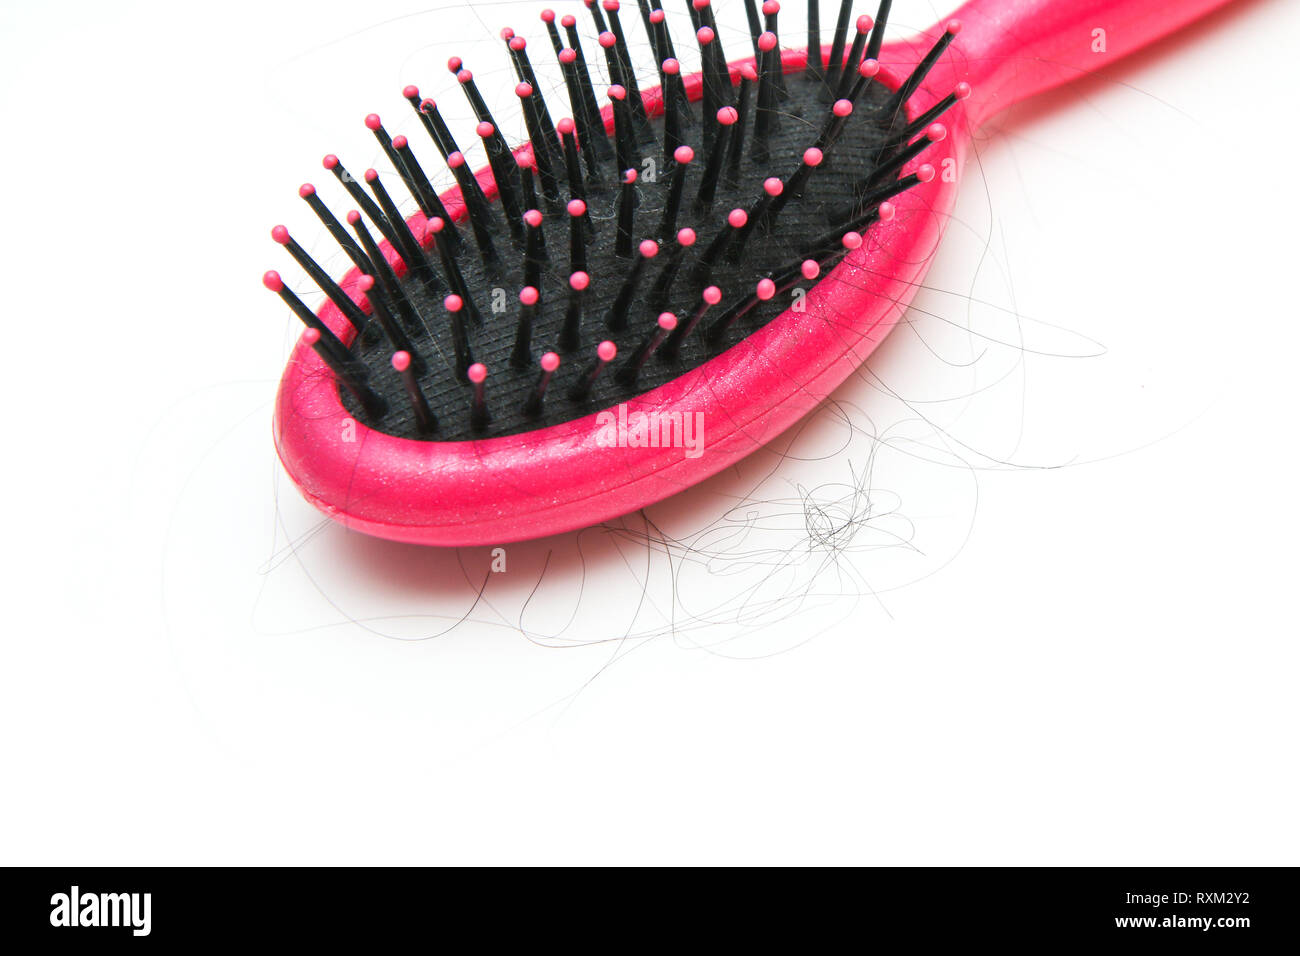 Spazzola per capelli rosa con alcuni peli su di esso. Simboleggia la perdita di capelli di donne. Foto Stock